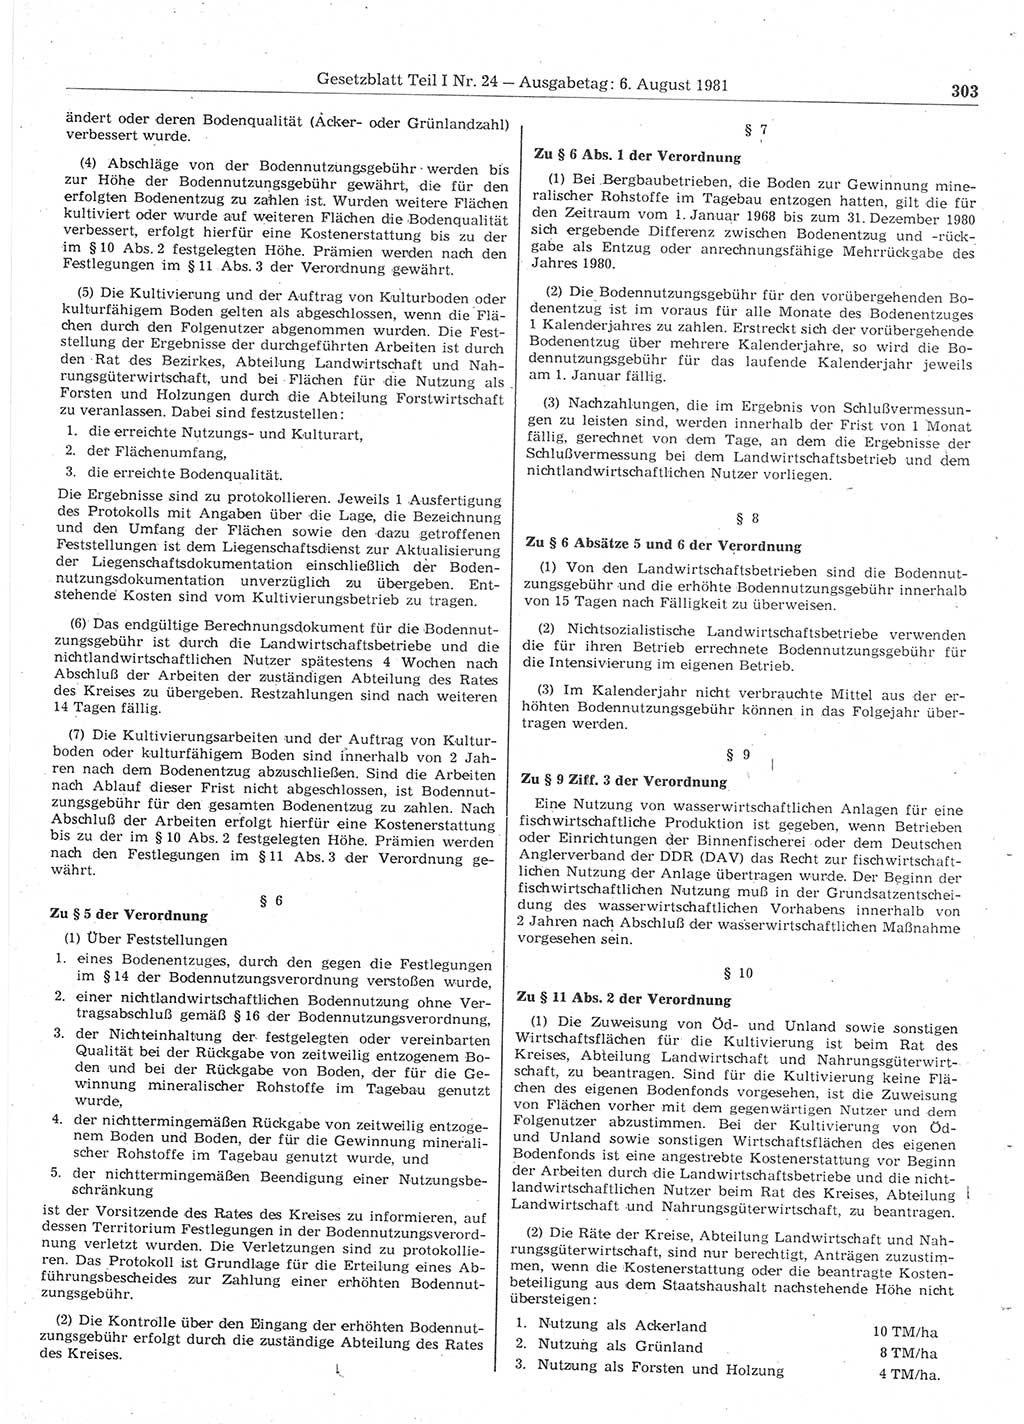 Gesetzblatt (GBl.) der Deutschen Demokratischen Republik (DDR) Teil Ⅰ 1981, Seite 303 (GBl. DDR Ⅰ 1981, S. 303)